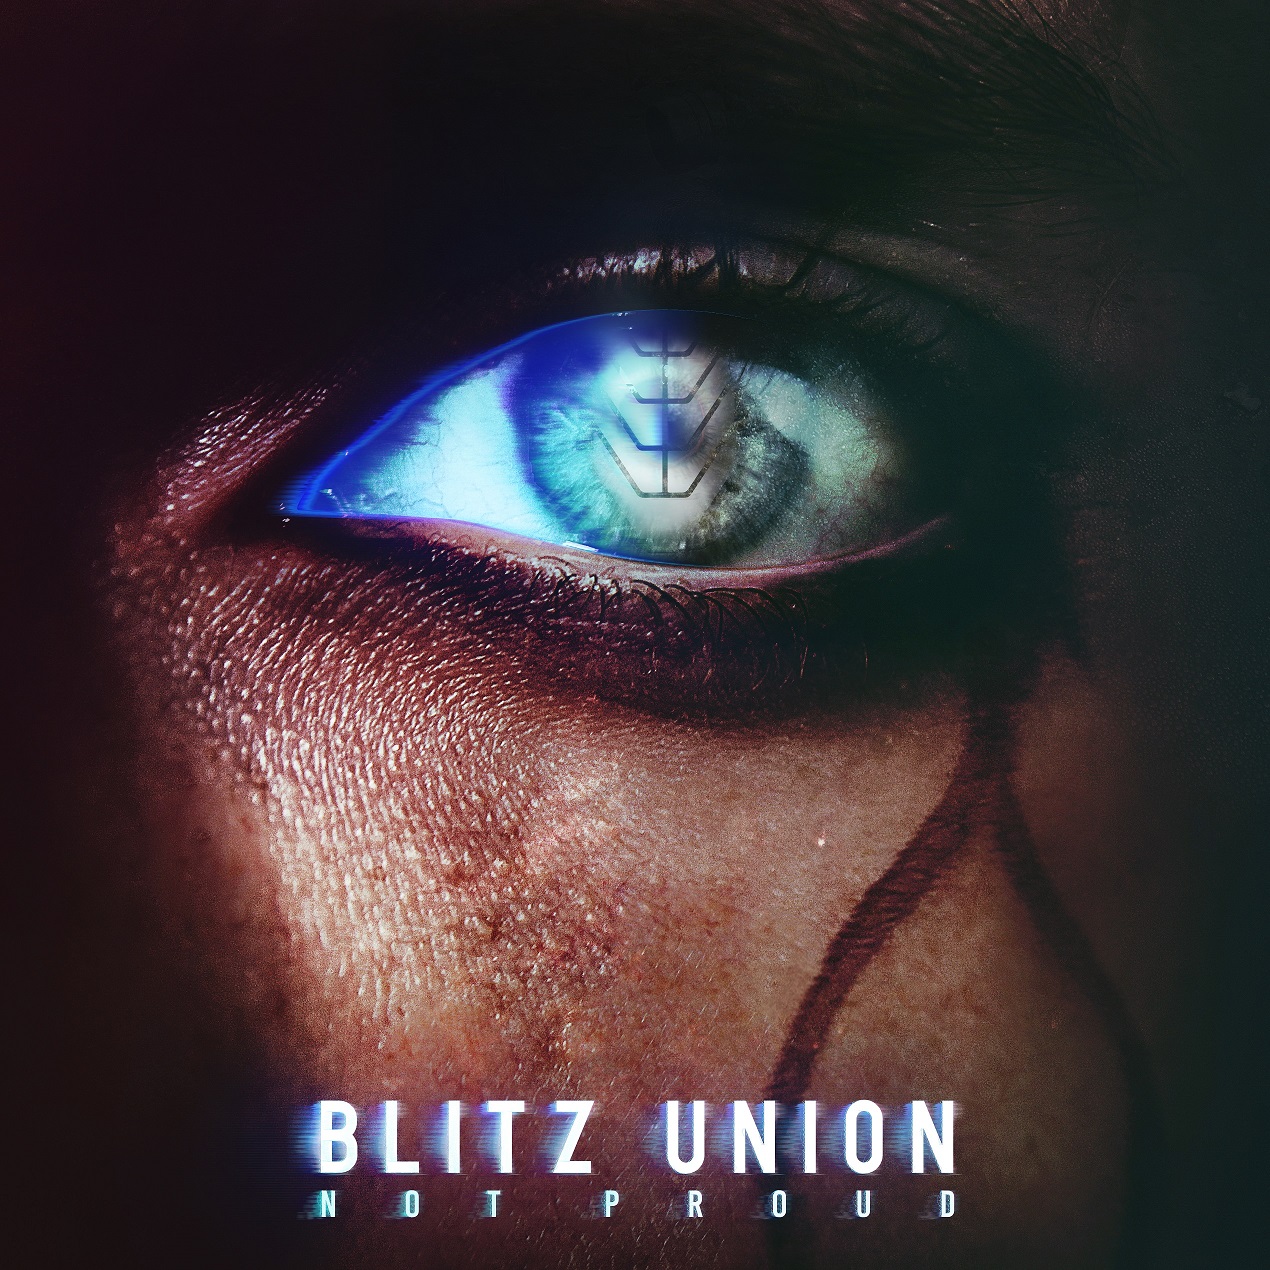 BLITZ UNION veröffentlichen neue EP “Not Proud”